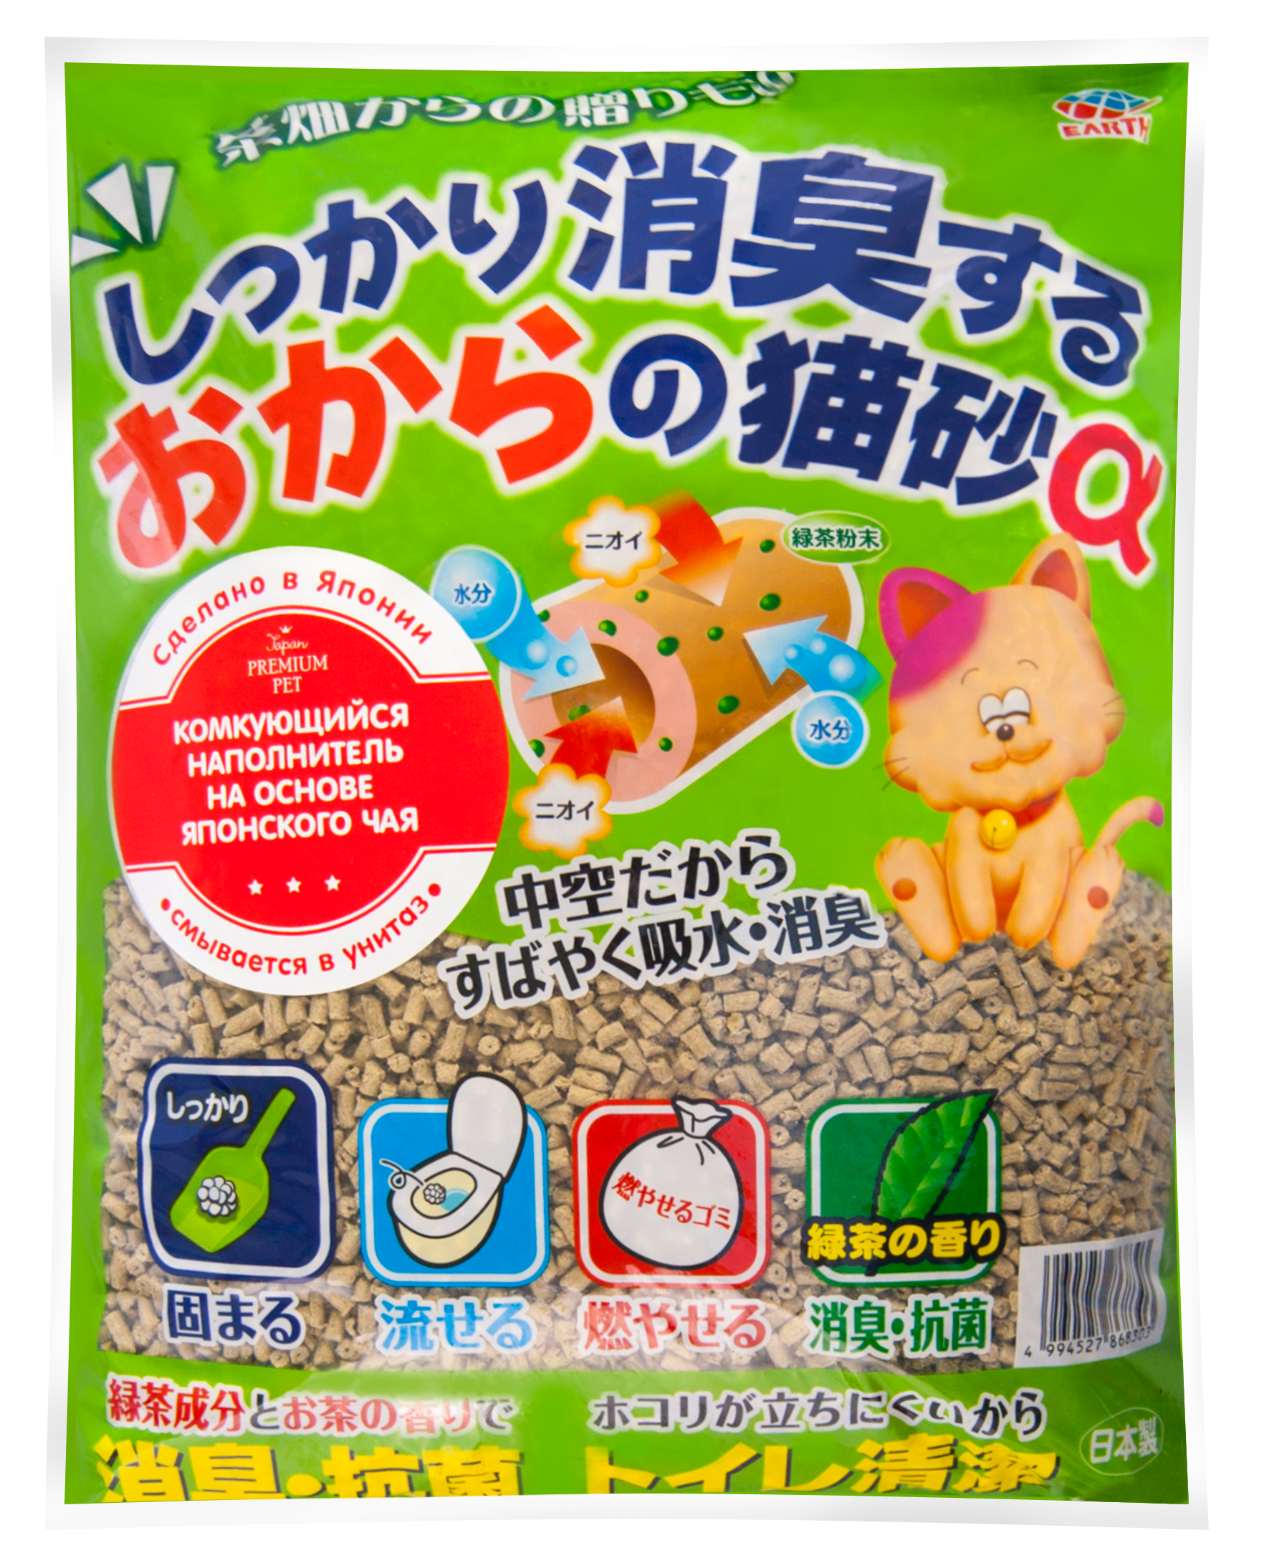 Japan Premium Pet Наполнитель комкующийся на основе японского чая, 7л